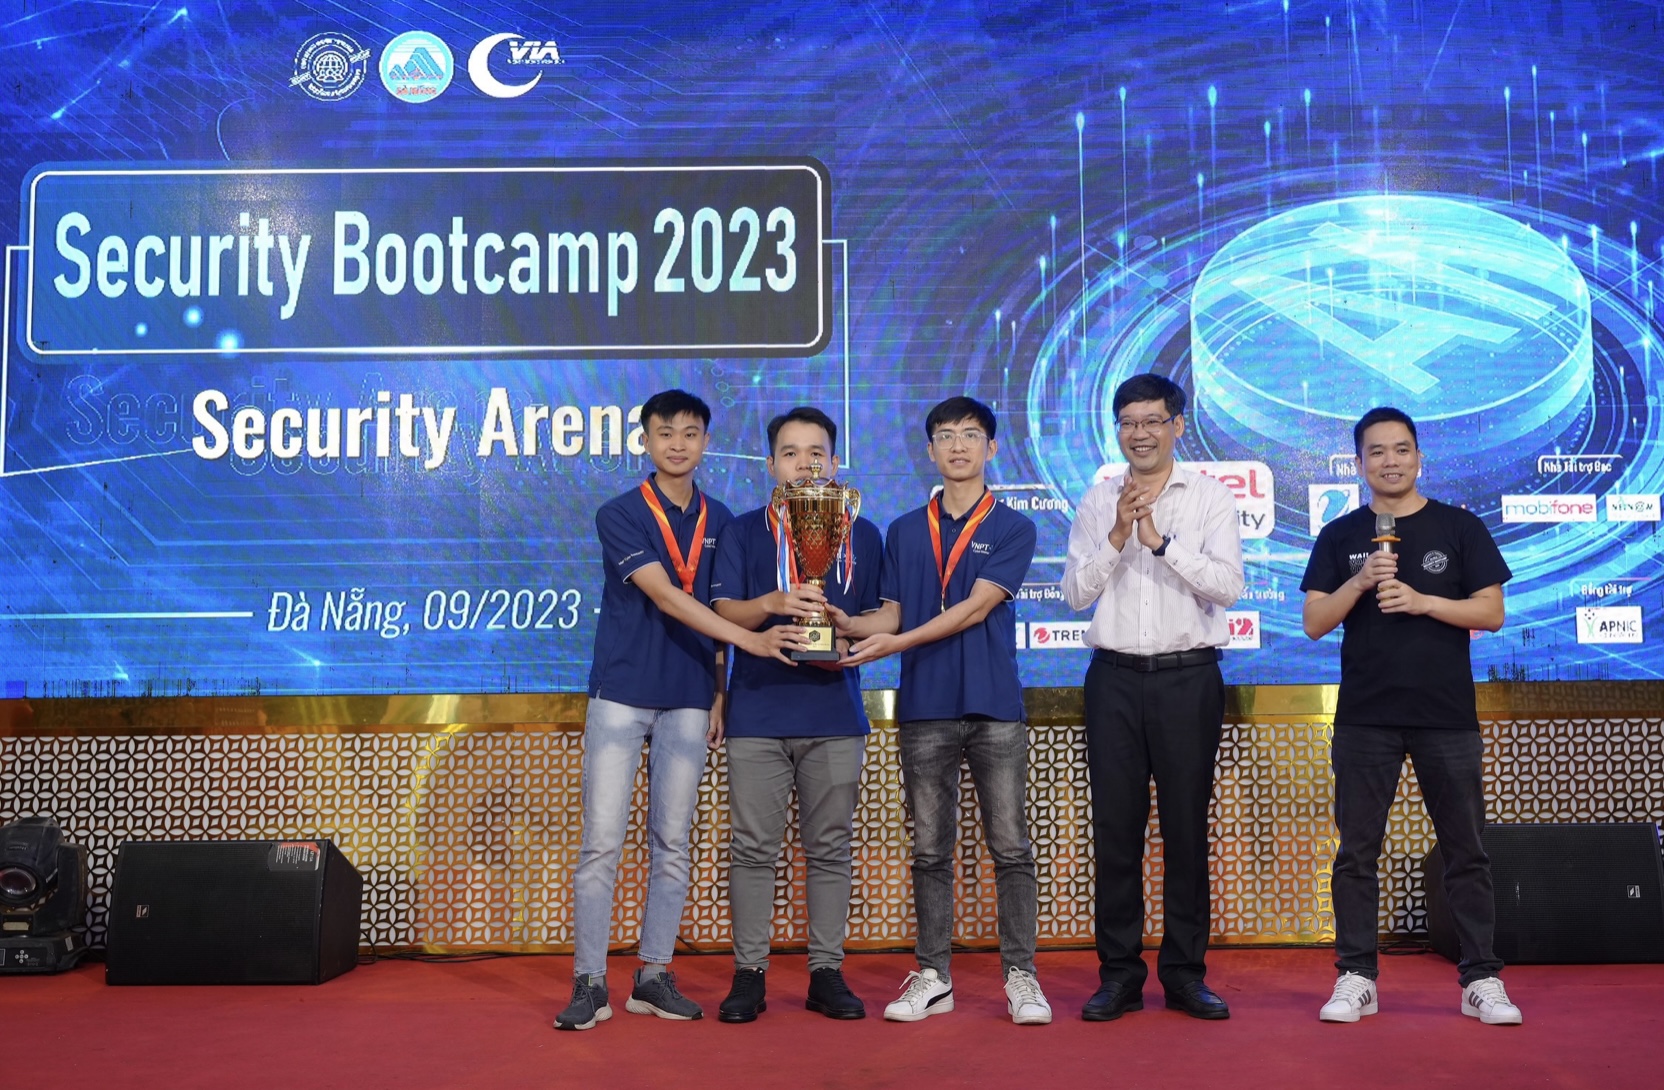 Tiếp tục trở thành nhà vô địch tại Đấu trường An toàn thông tin (ATTT) – Security Bootcamp 2023, đã giúp VNPT lập hat-trick tại Đấu trường An toàn thông tin Bootcamp An toàn.